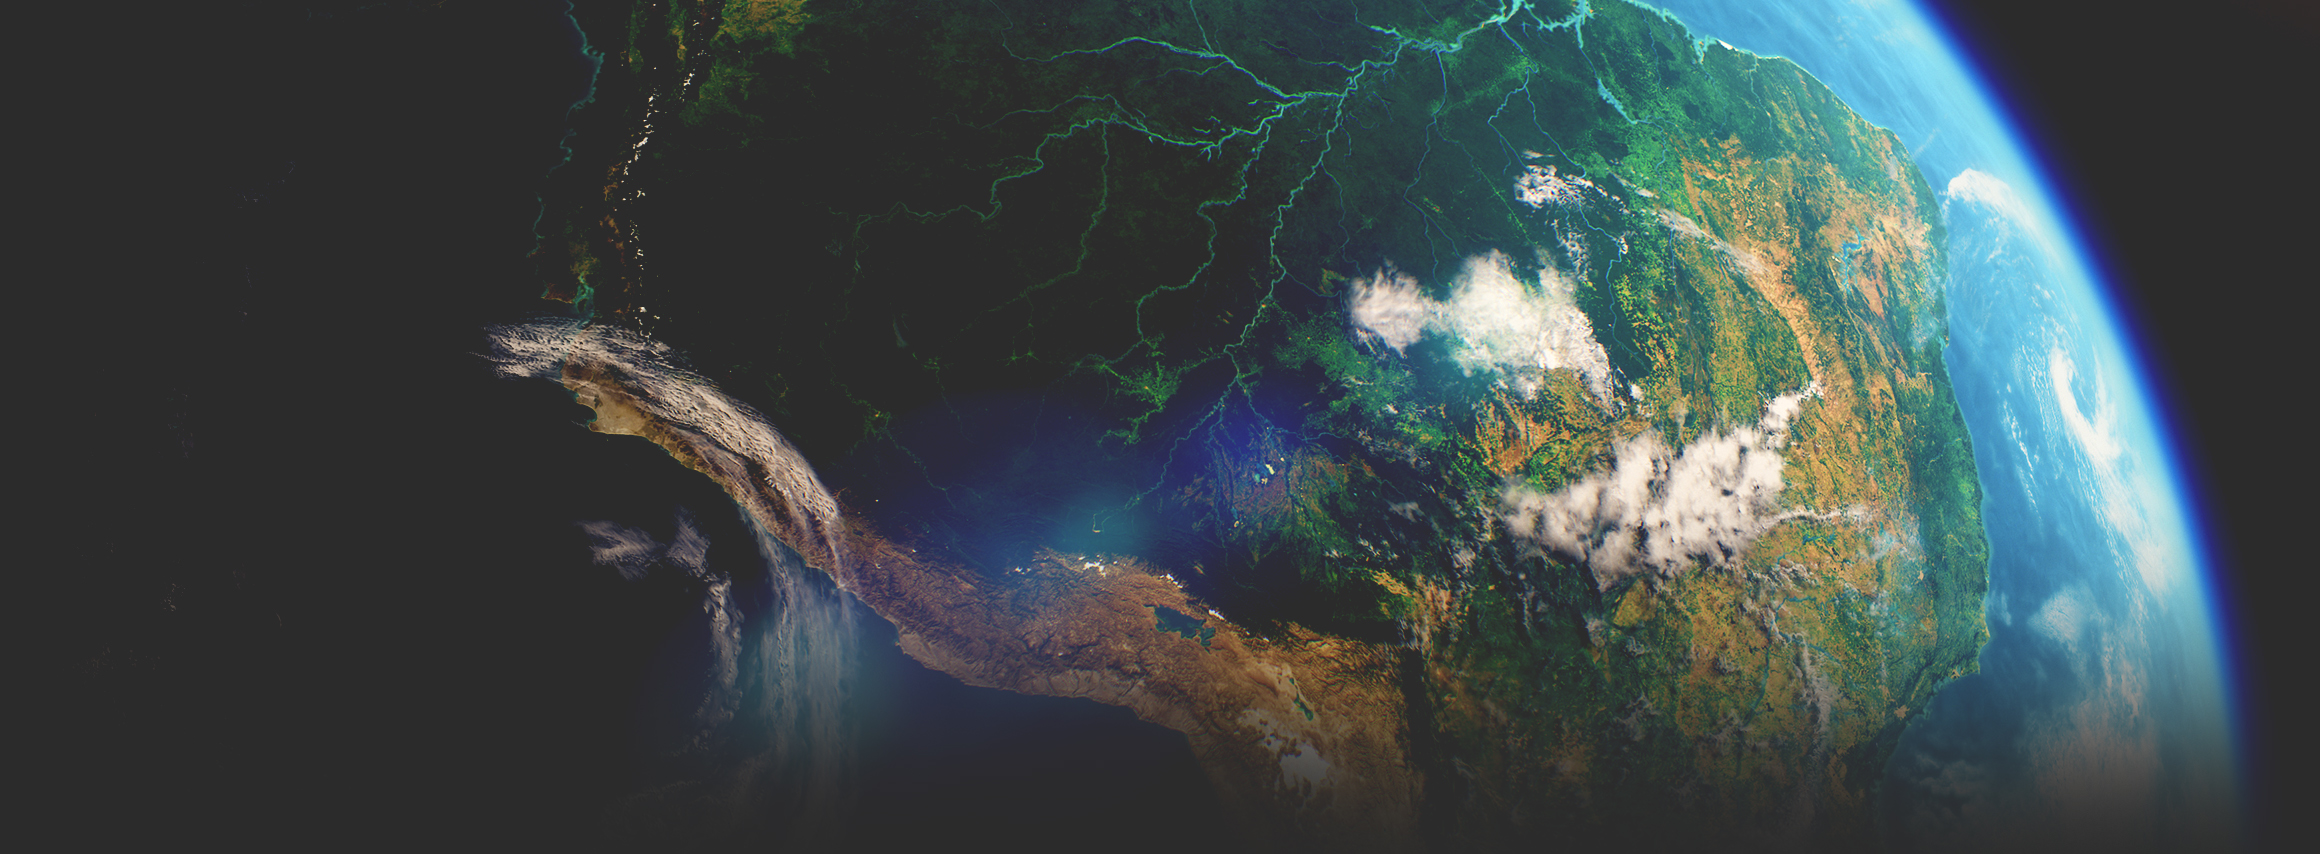 L’imagerie satellite prise dans l’espace présente un continent vert avec un fleuve le traversant, l’océan et l’atmosphère